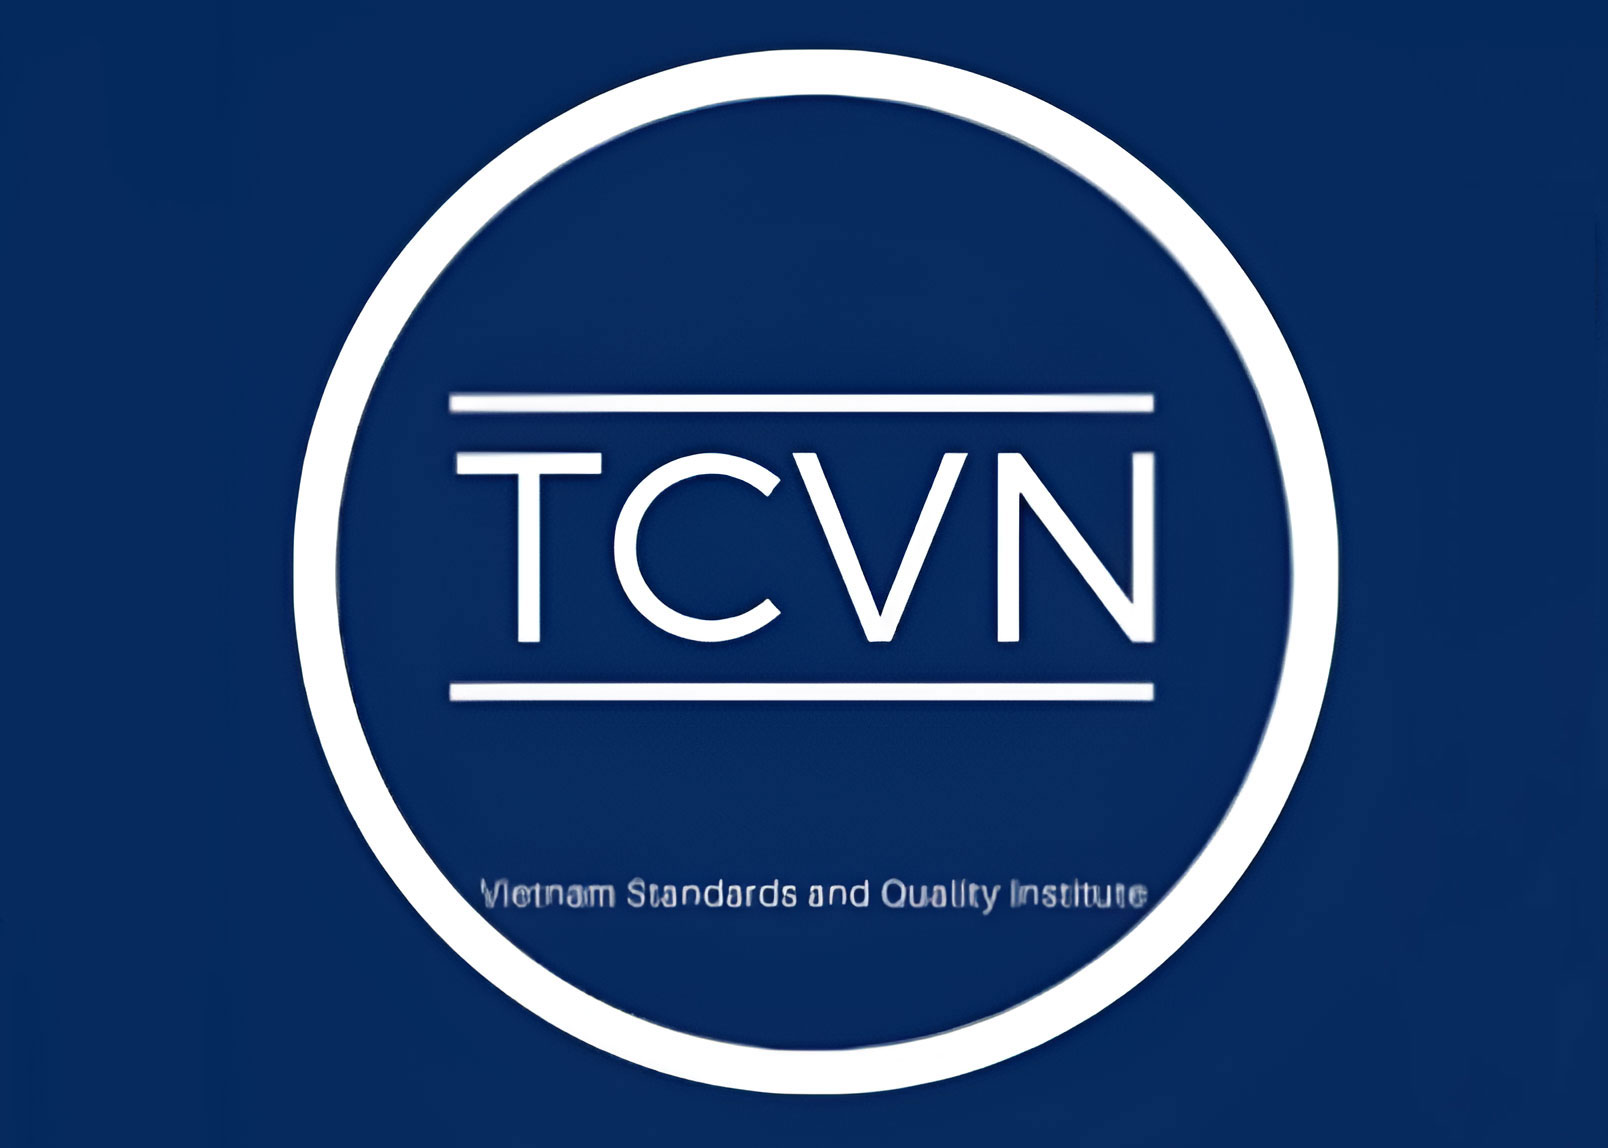 Tiêu chuẩn Việt Nam TCVN 2608